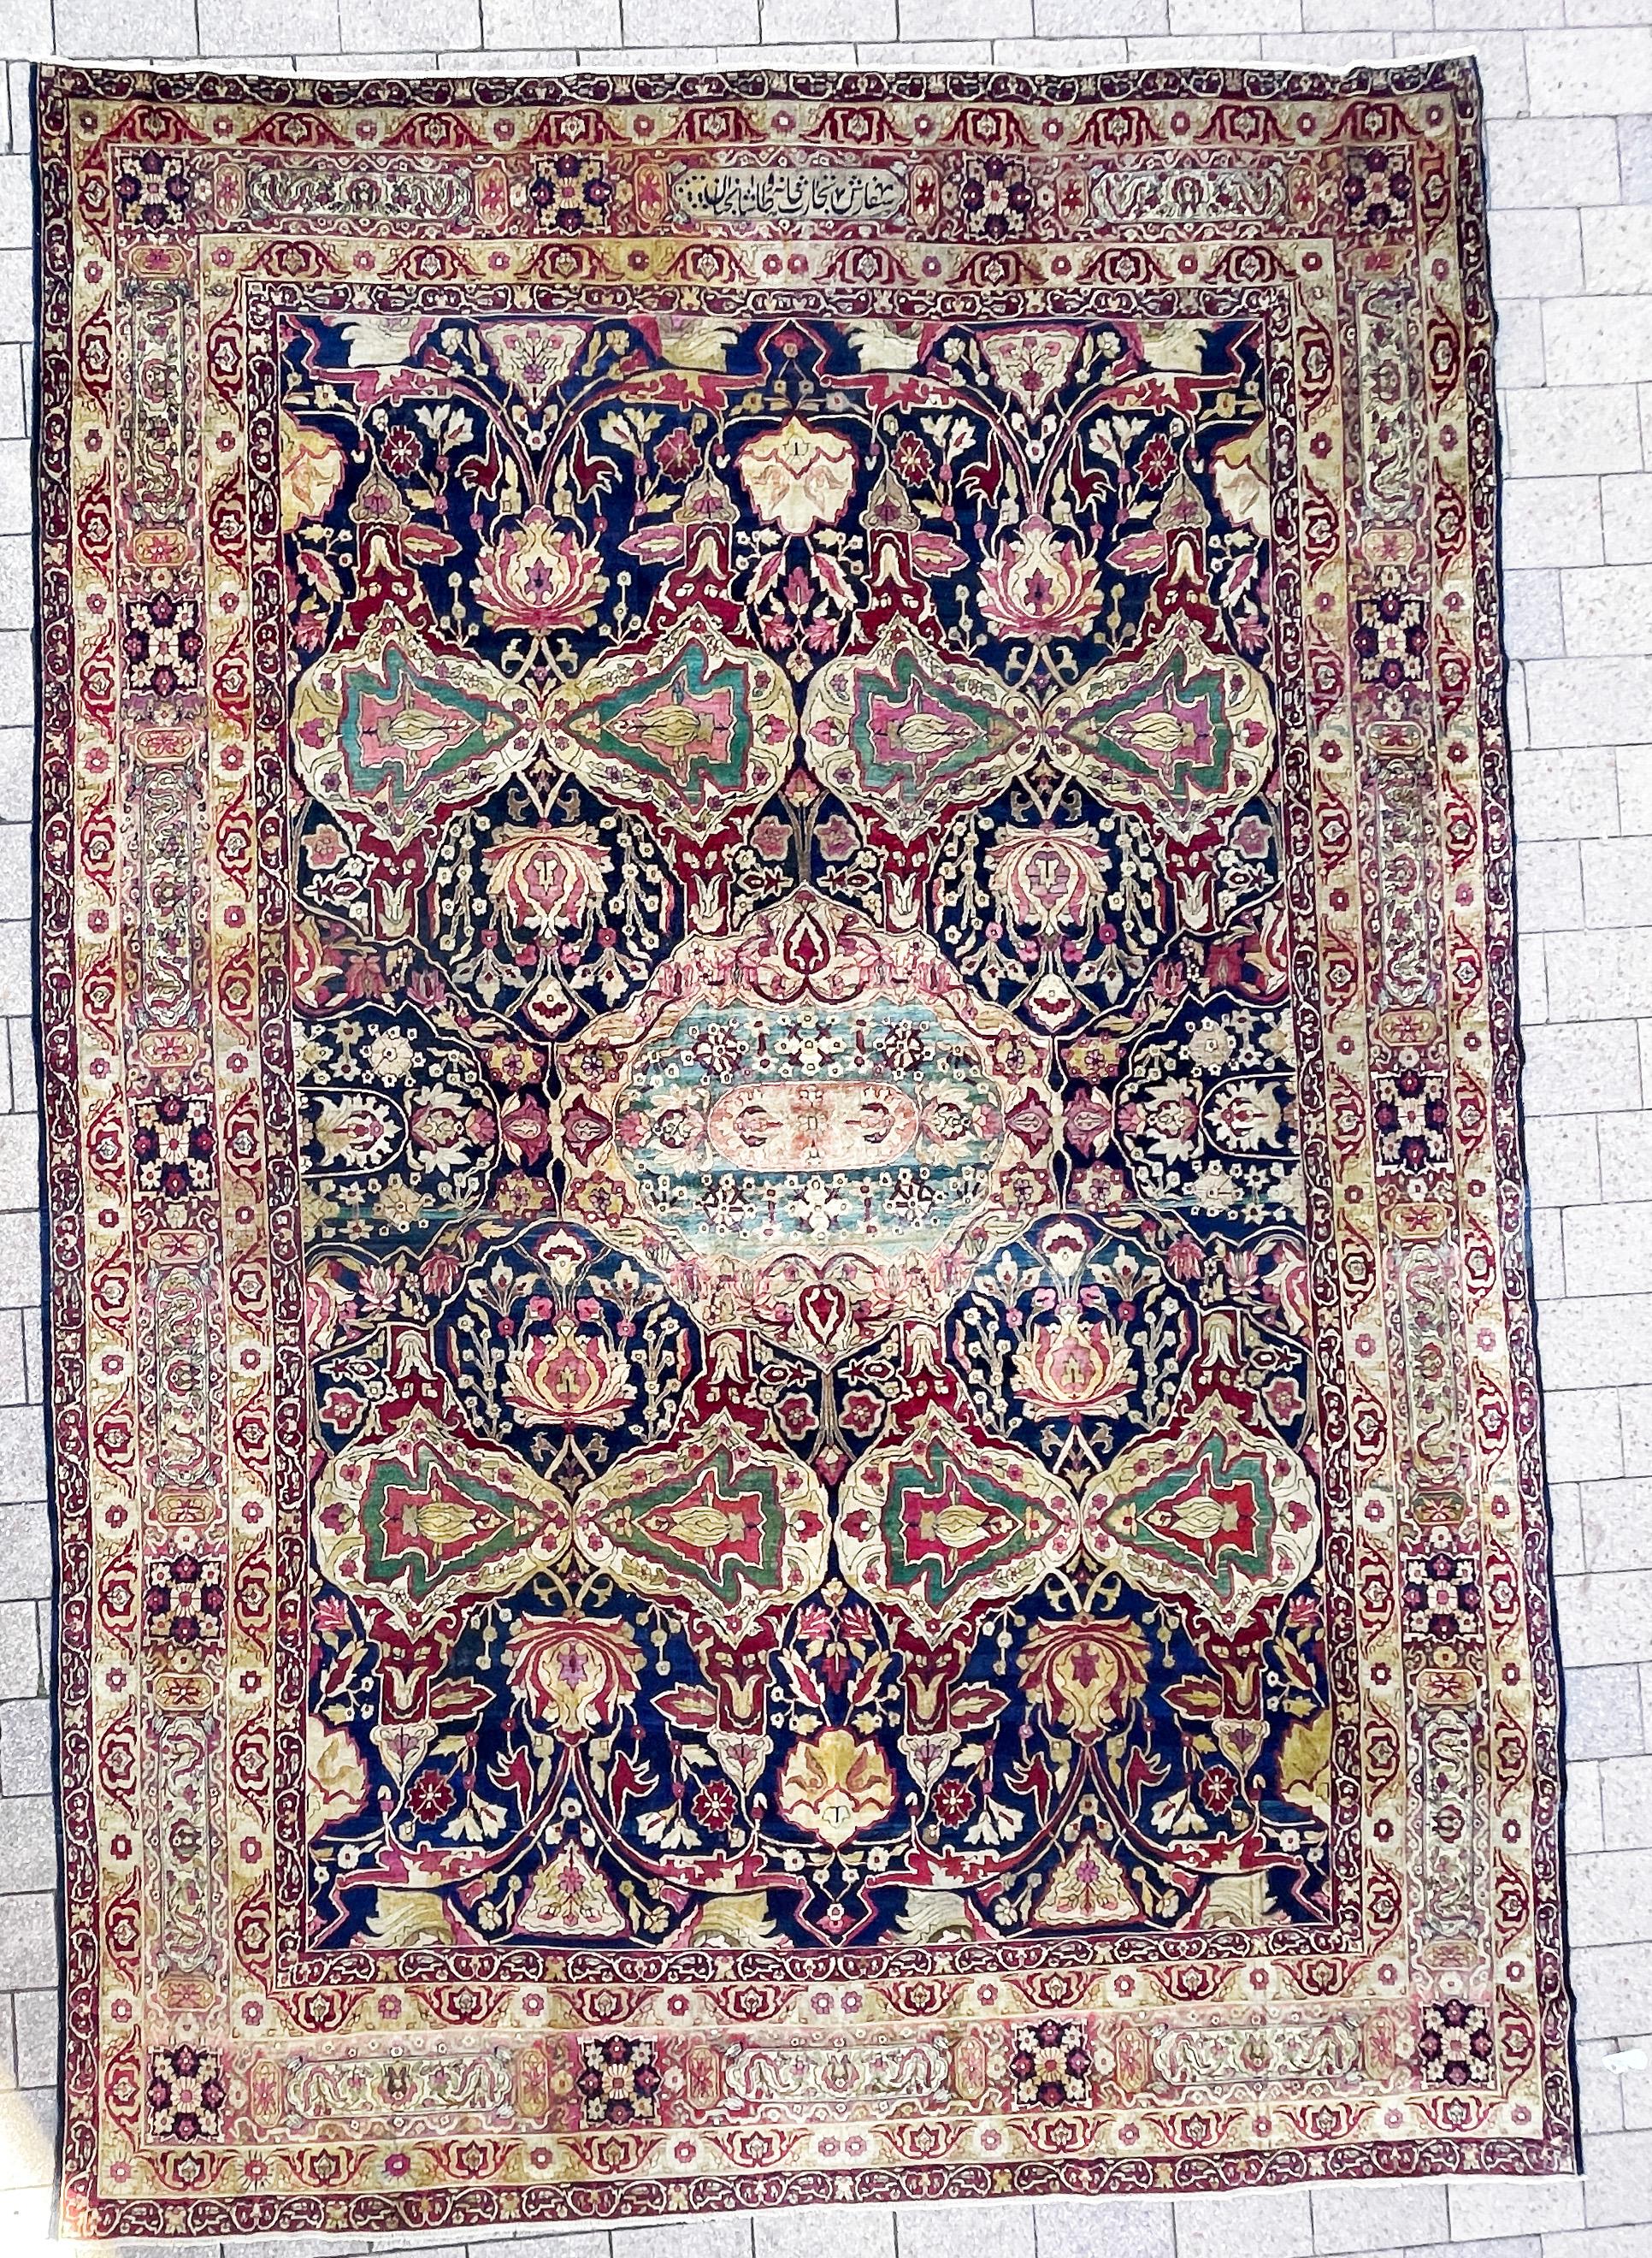 Entdecken Sie die Faszination des Kermanshah- oder Laver Kerman-Teppichs, eines südostpersischen Schatzes, der die Geschichte des Qajar-Königreichs in Bildern festhält. Diese Teppiche entstammen einer reichen Tradition, die bis in die